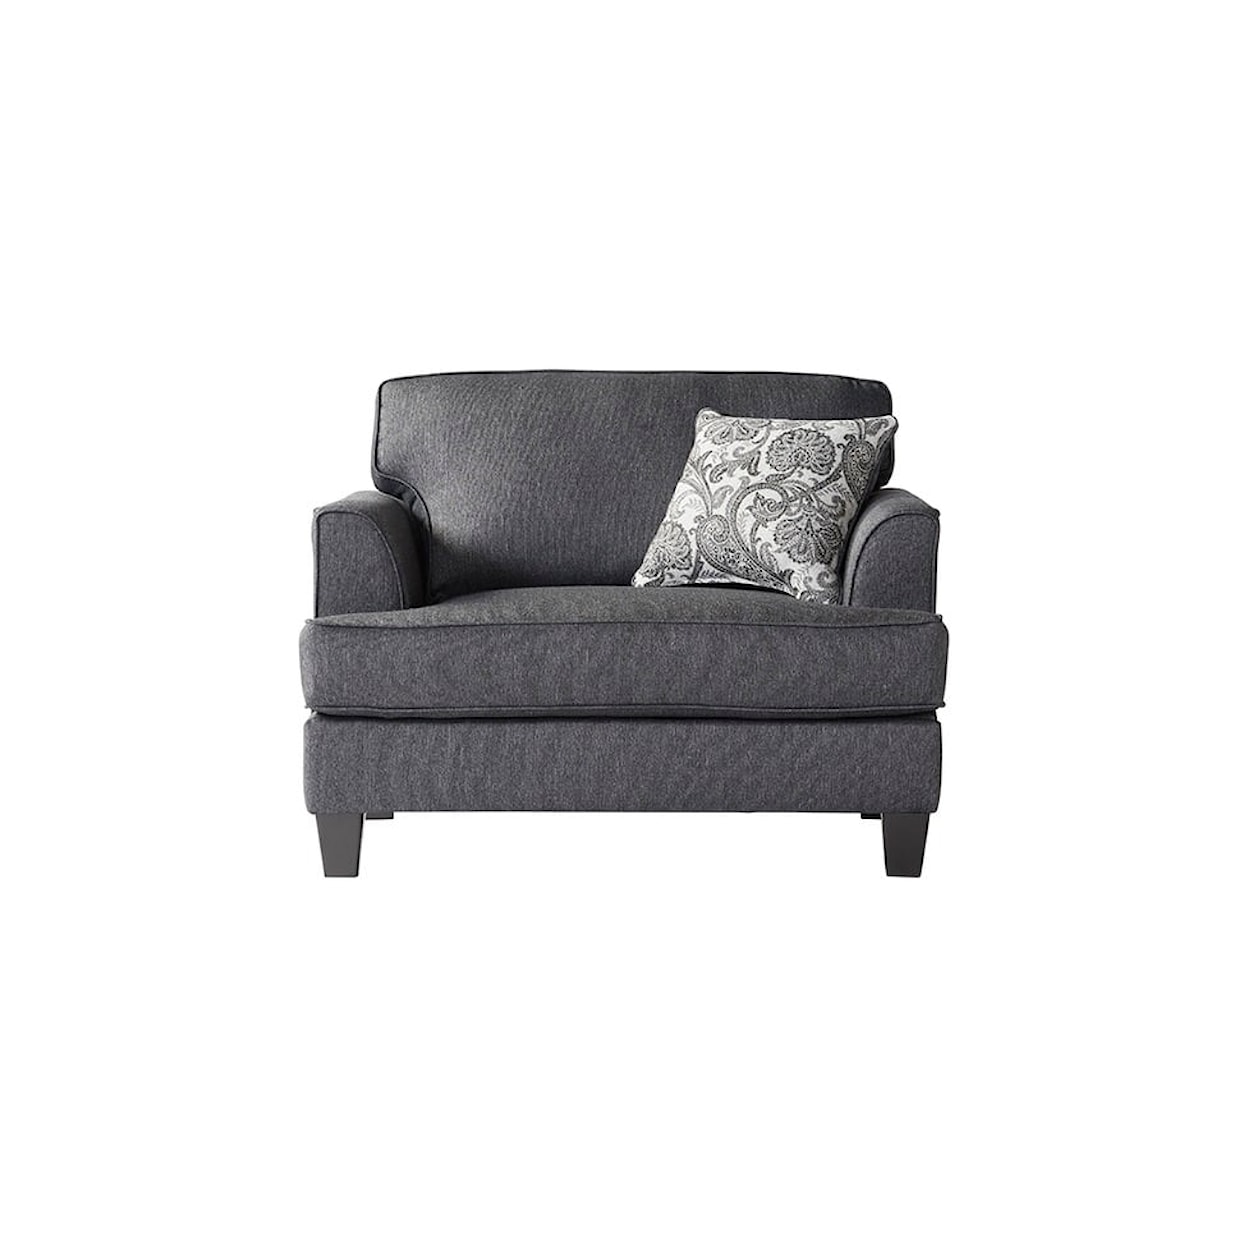 Hughes Furniture 5625 Chair